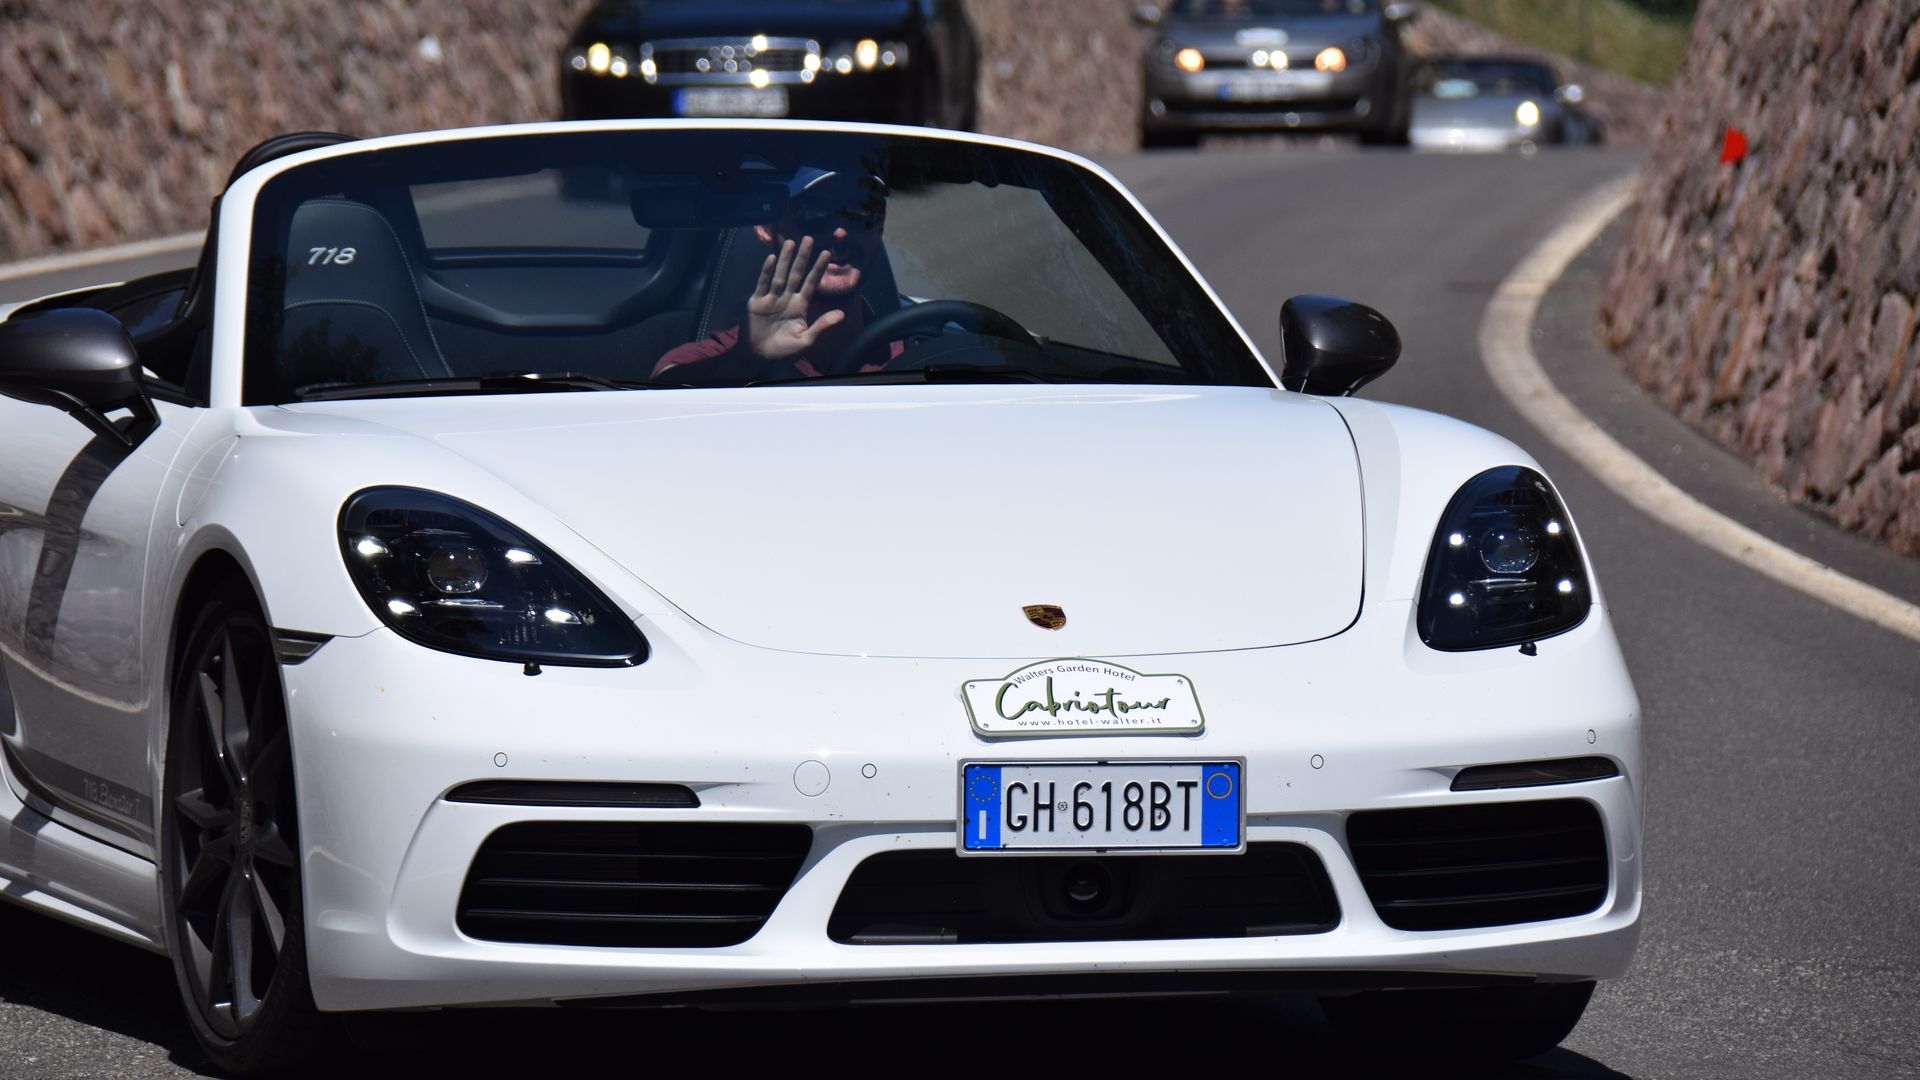 Daniel Pircher passionierter Cabrio Fahrer im Porsche Cabrio bei einer Cabriotour in Südtiol: Gastgeber im Cabriohotel Walters in Schenna